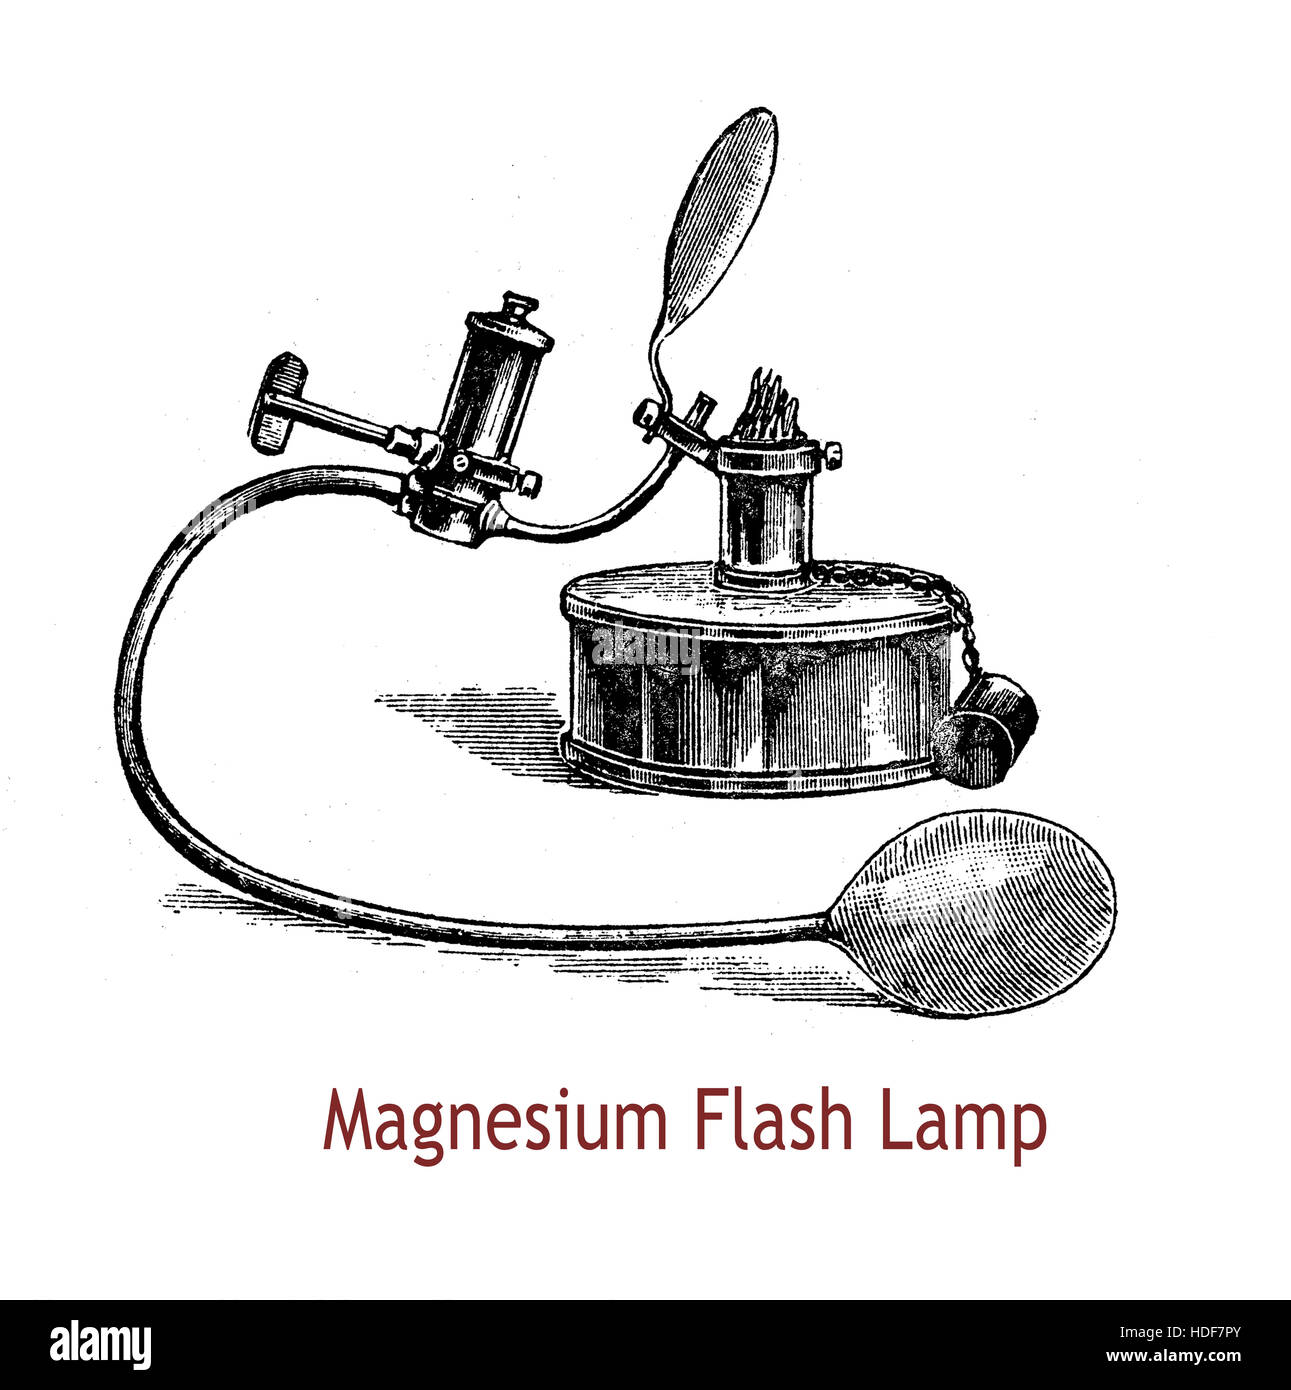 Il magnesio antiquariato lampada a flash utilizzando magnesio puro, si compone di tre parti: un appartamento grande lampada di alcol, un ricettacolo per il magnesio e una grande mano bulbo pressione tutti uniti insieme. Con una singola pressione del bulbo dà un intenso e brillante luce Foto Stock